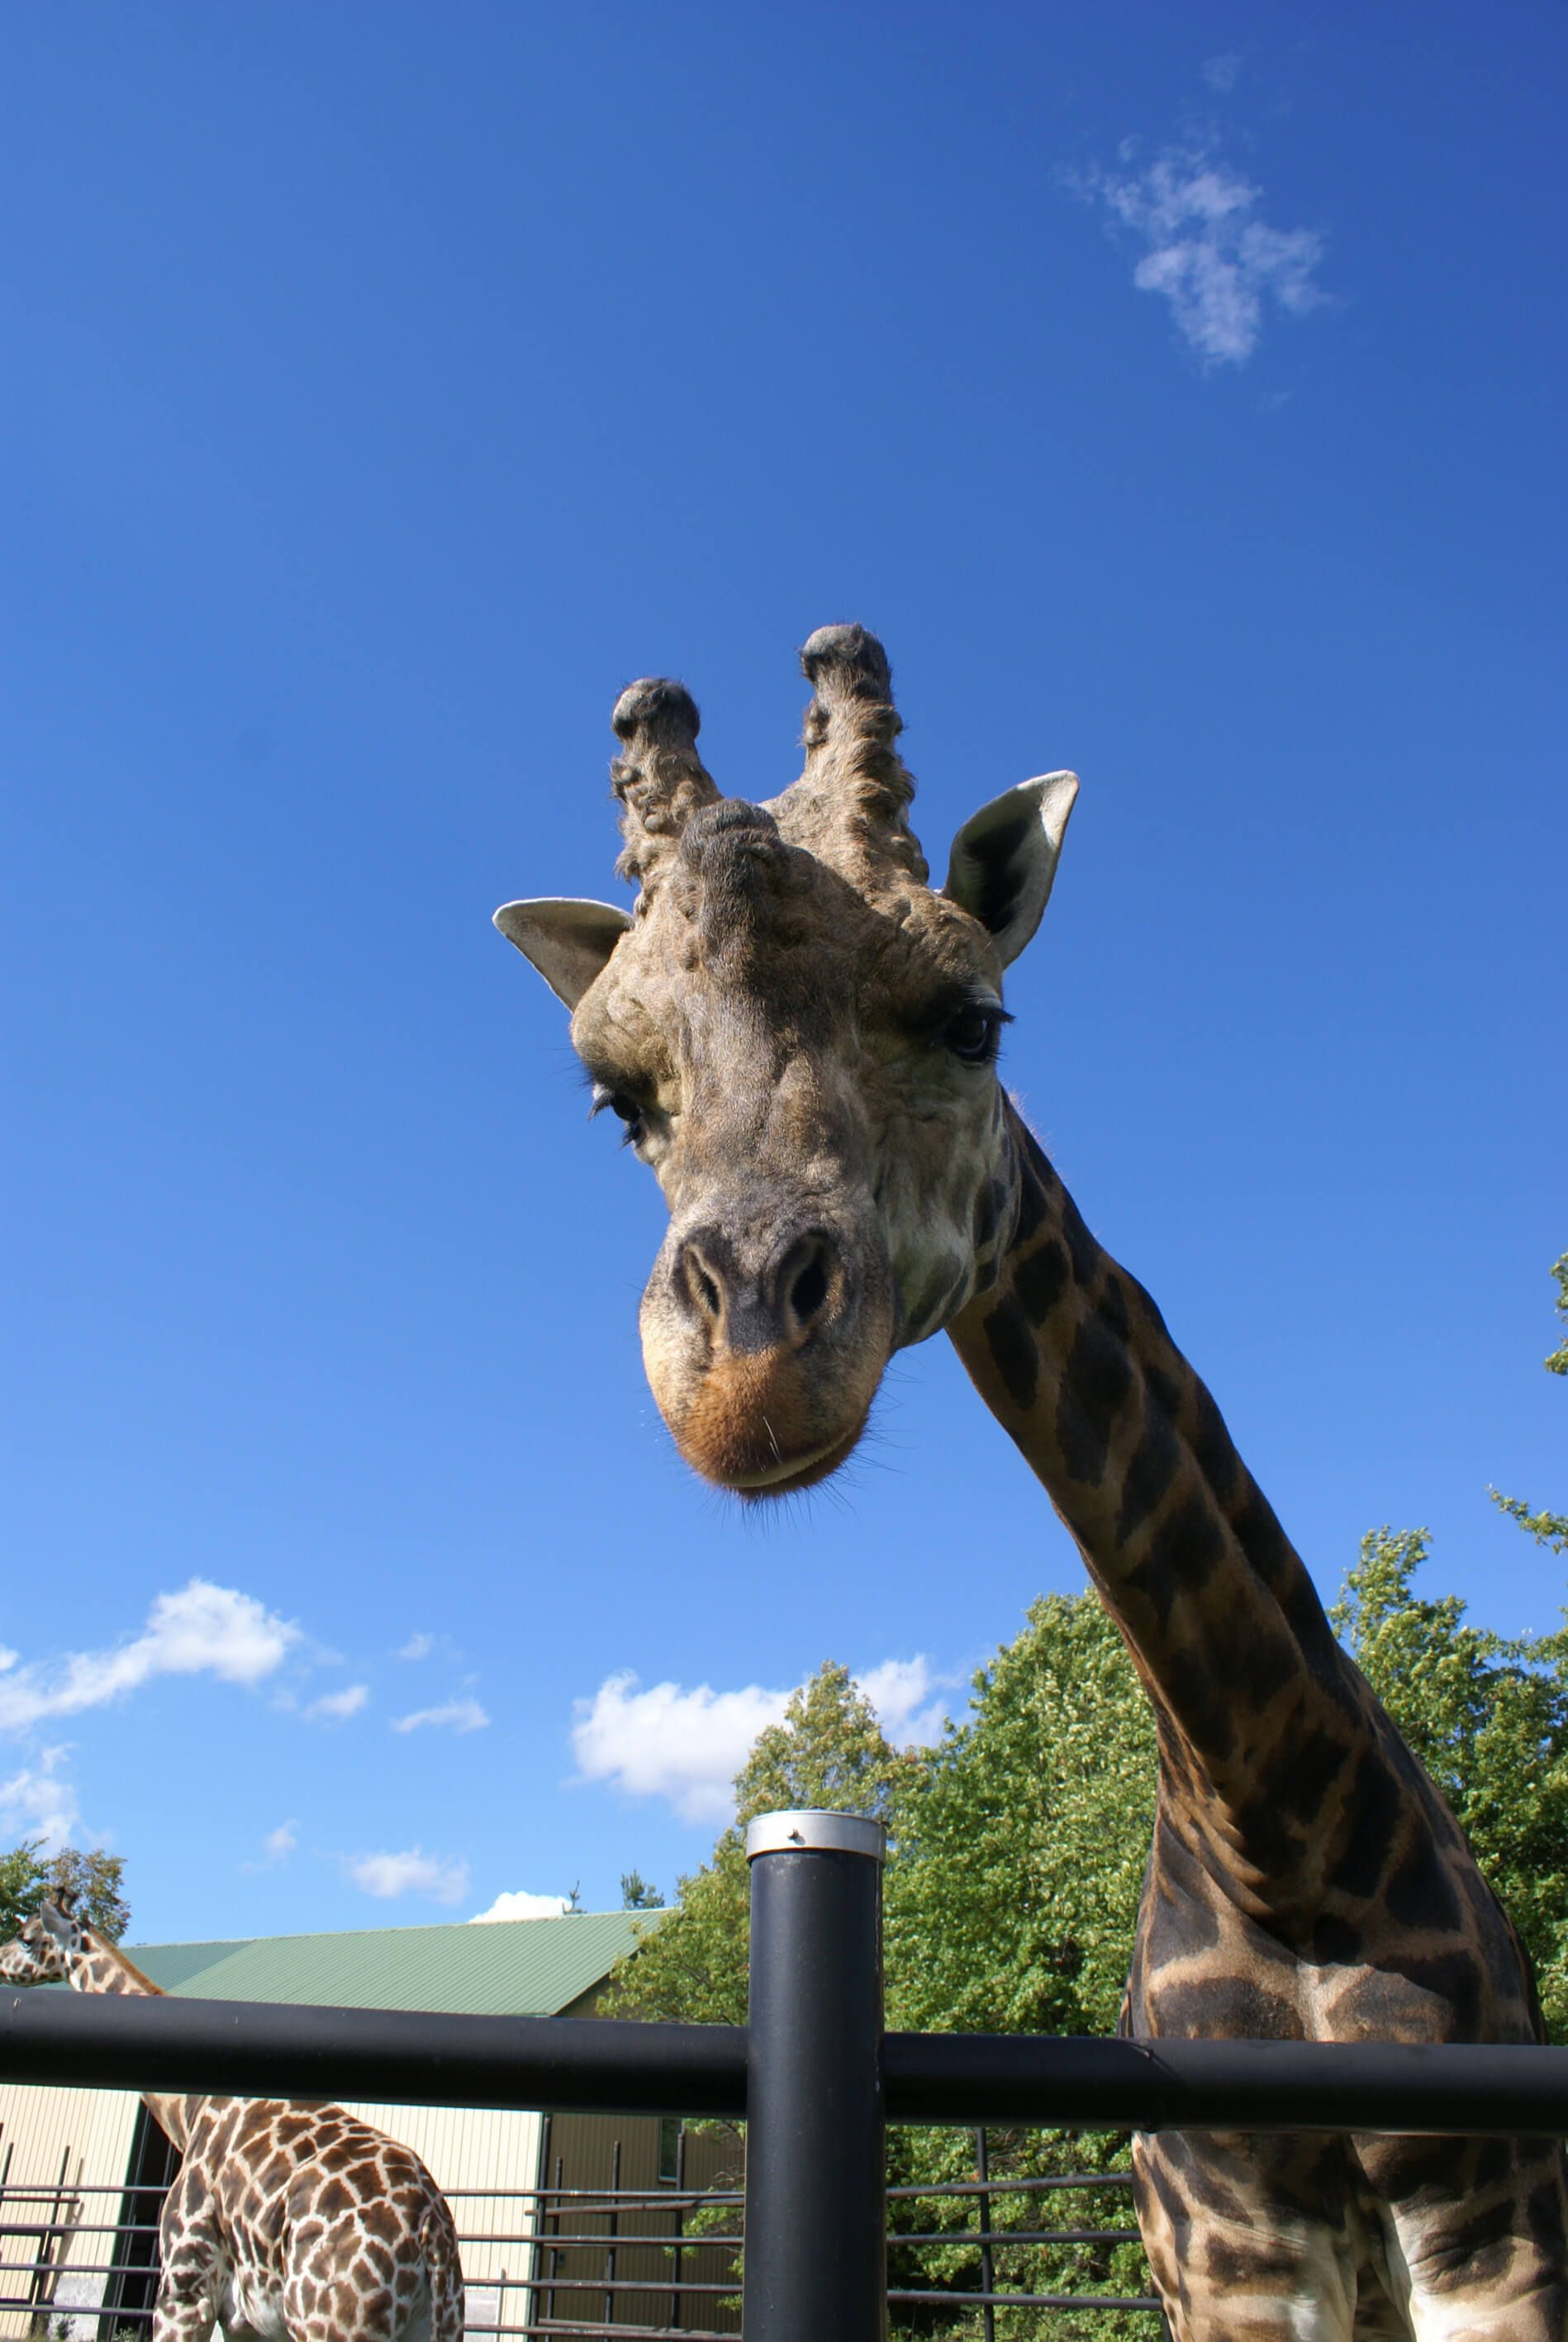 a close up of giraffe at interactive zoo experience niagara